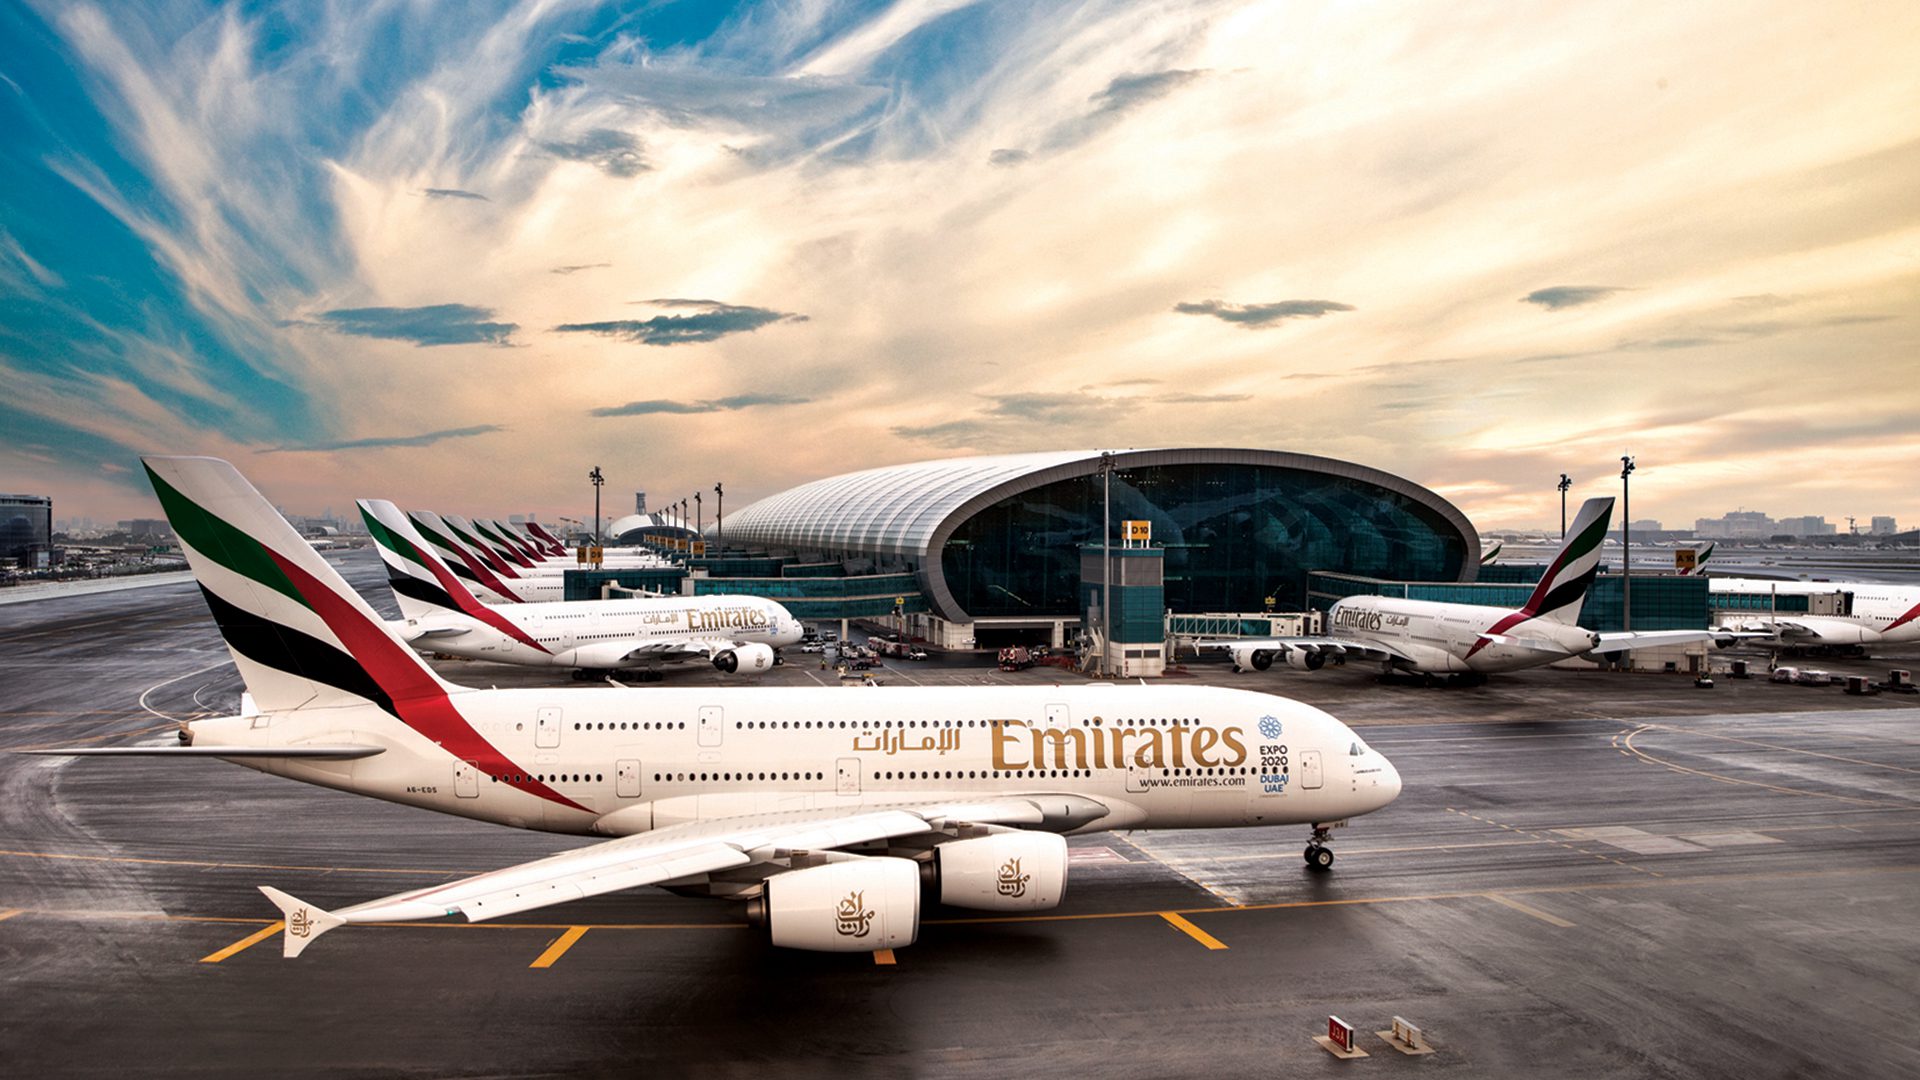 Emirates fleet, image by Emirates